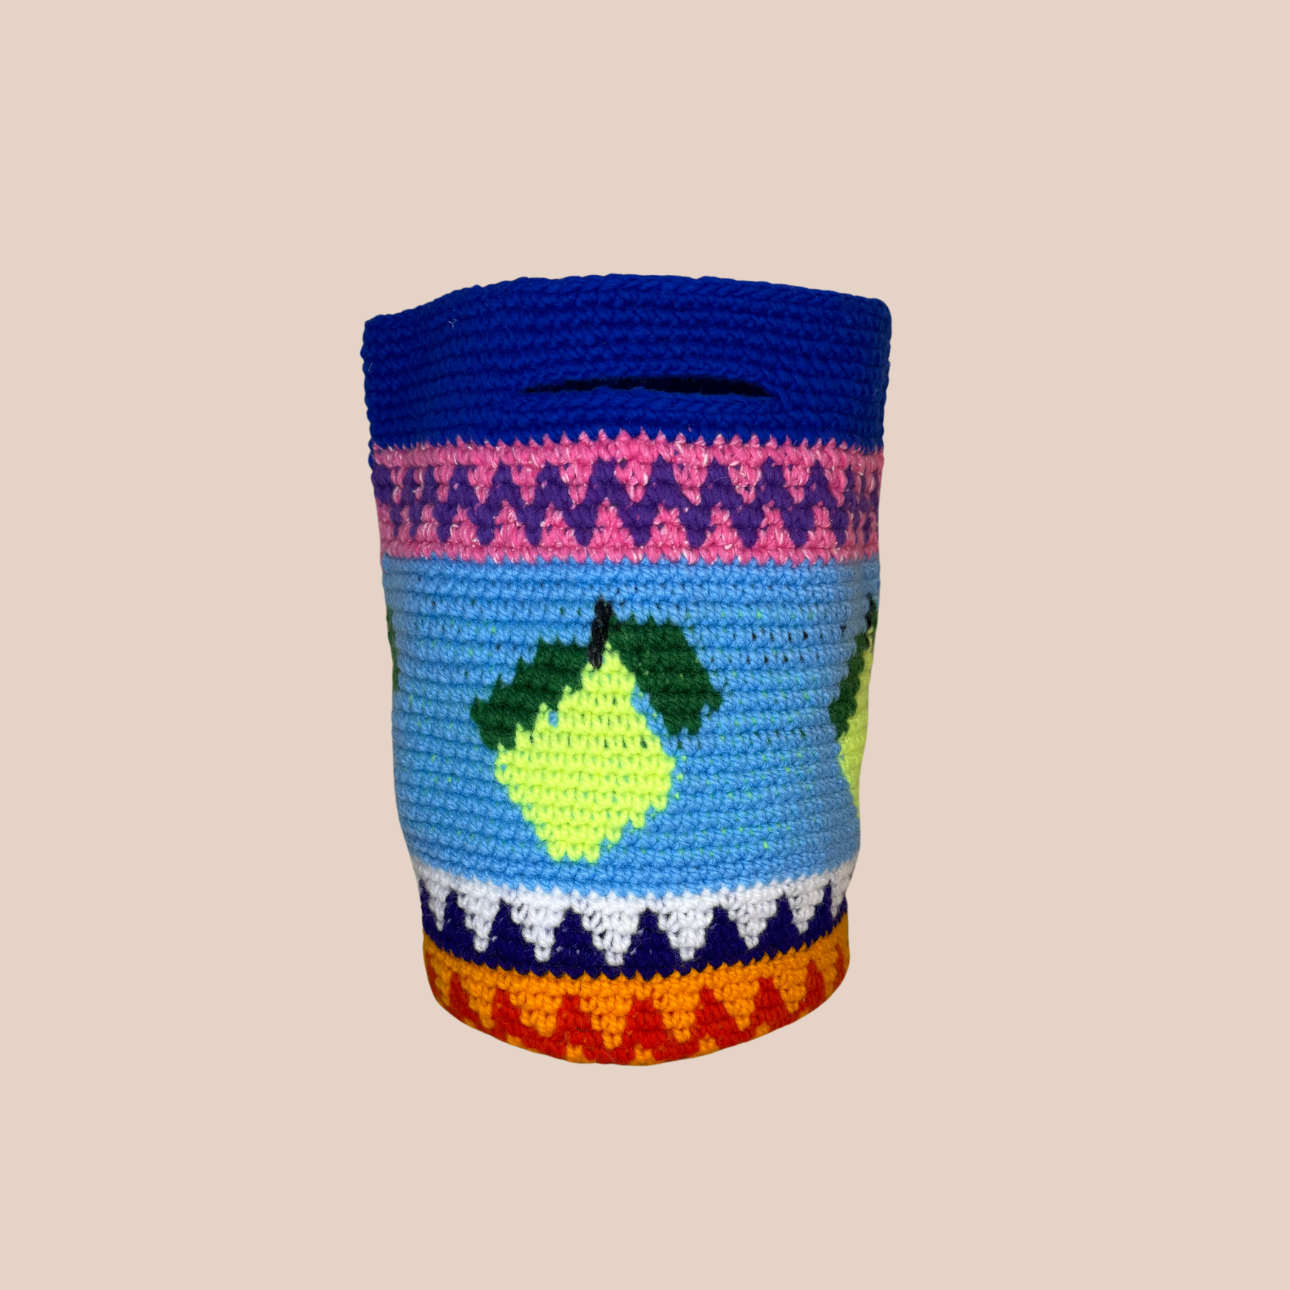 Image du sac motif citron de Maison Badigo, sac en laine crocheté multicolore unique et tendance